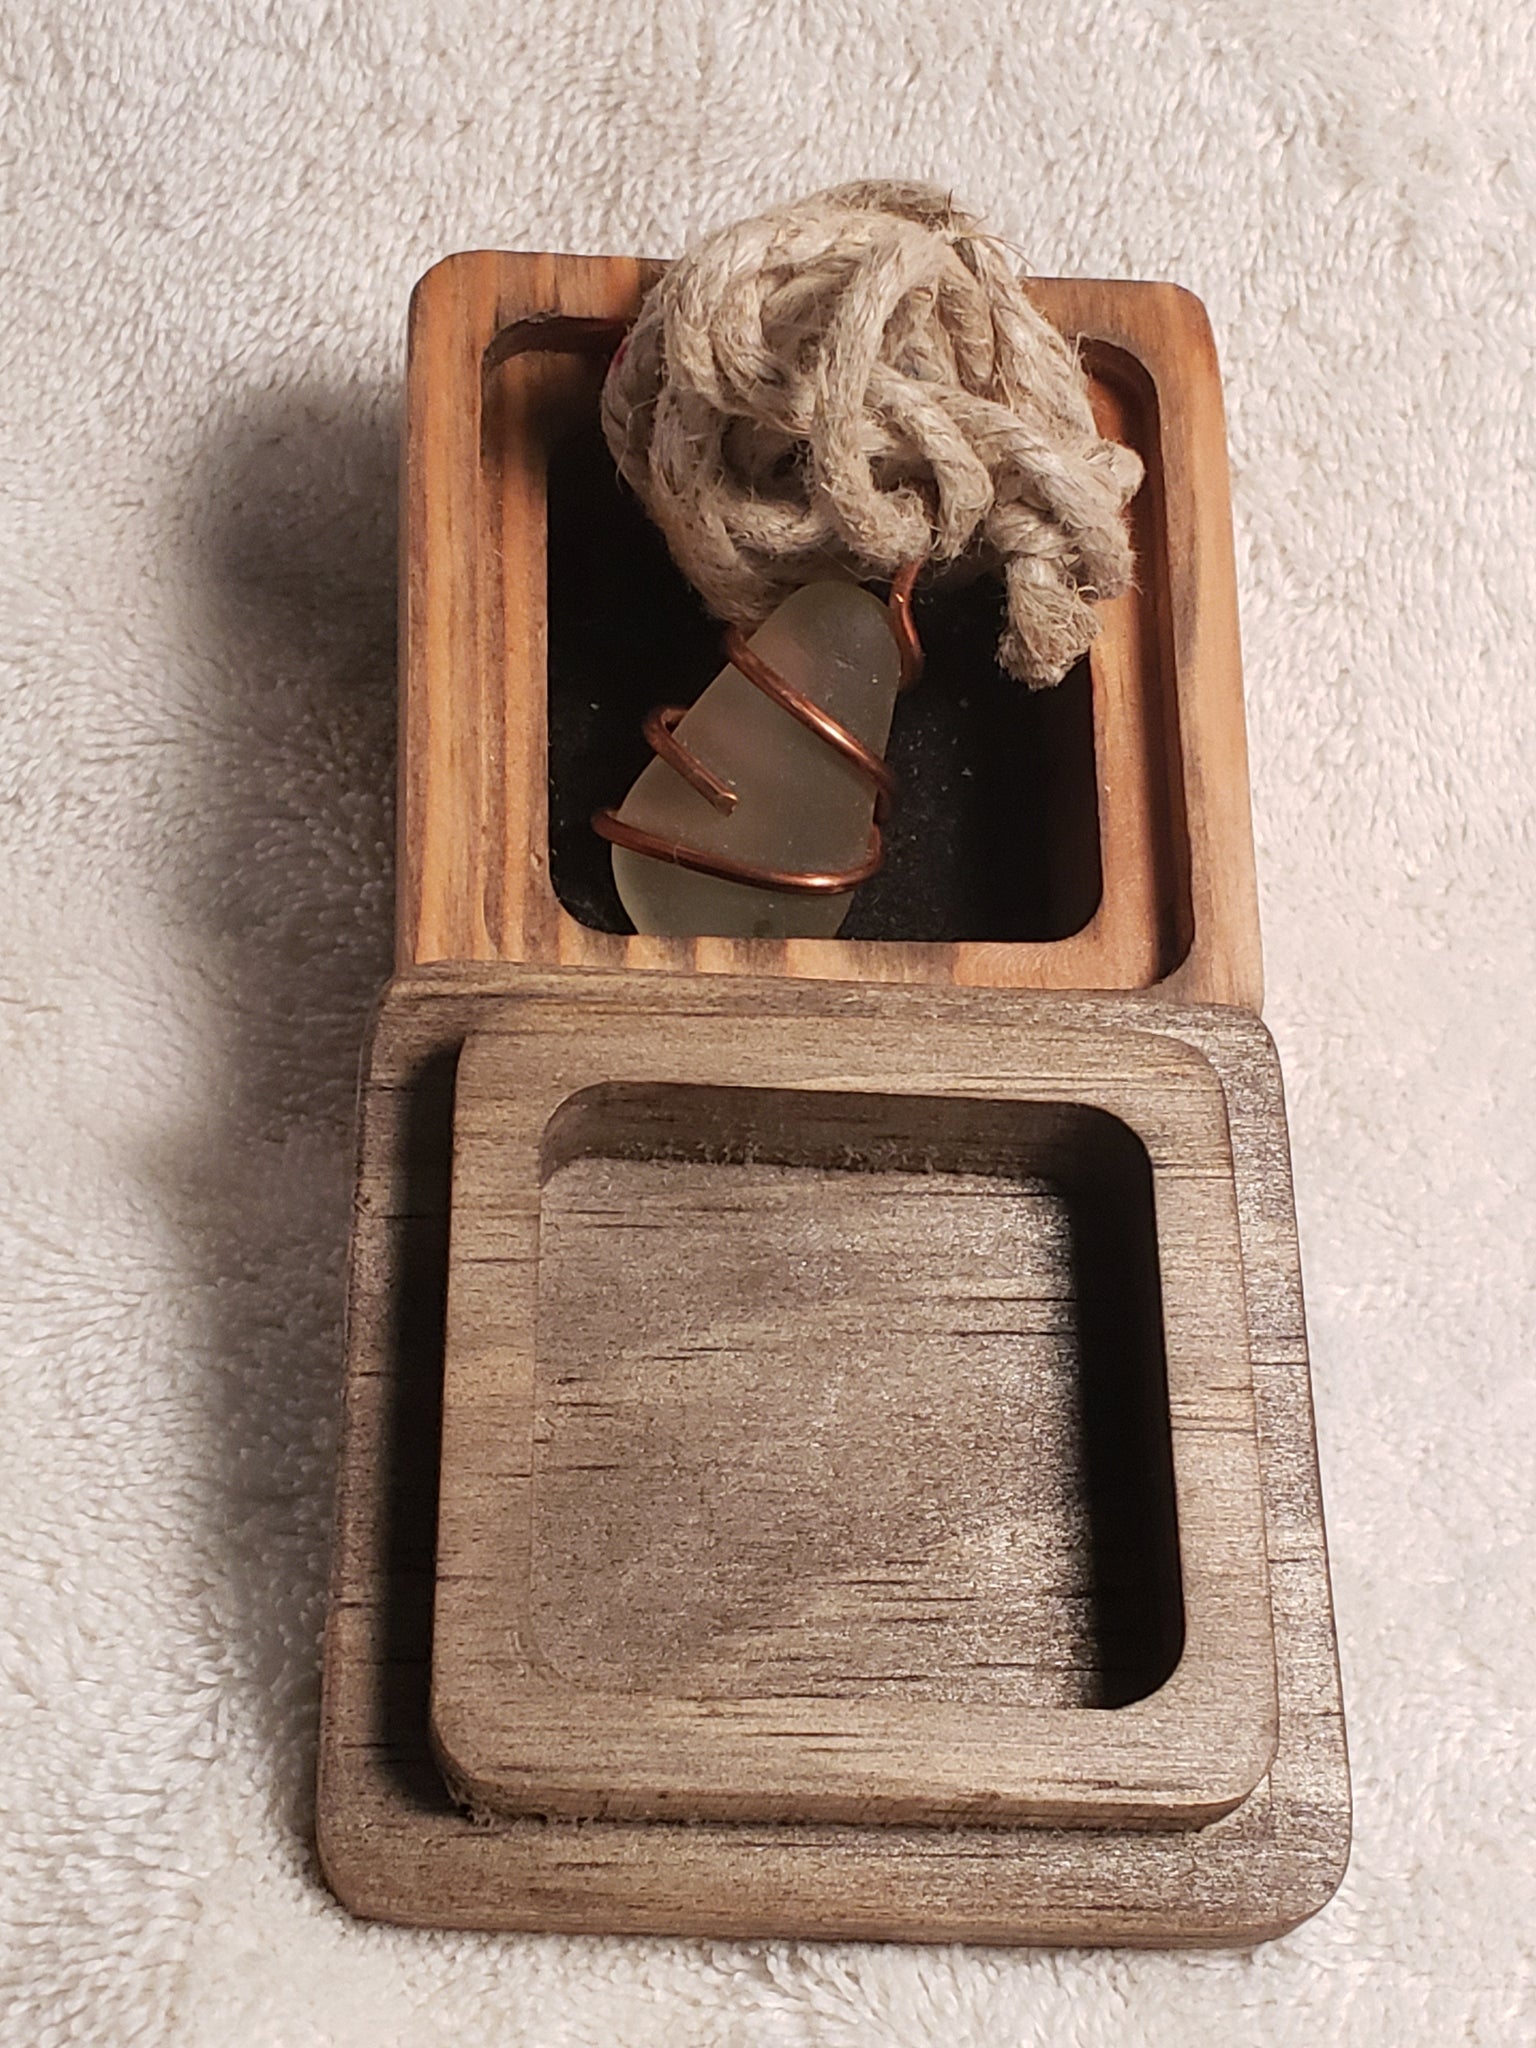 Seaglass Pendant w Wooden Box